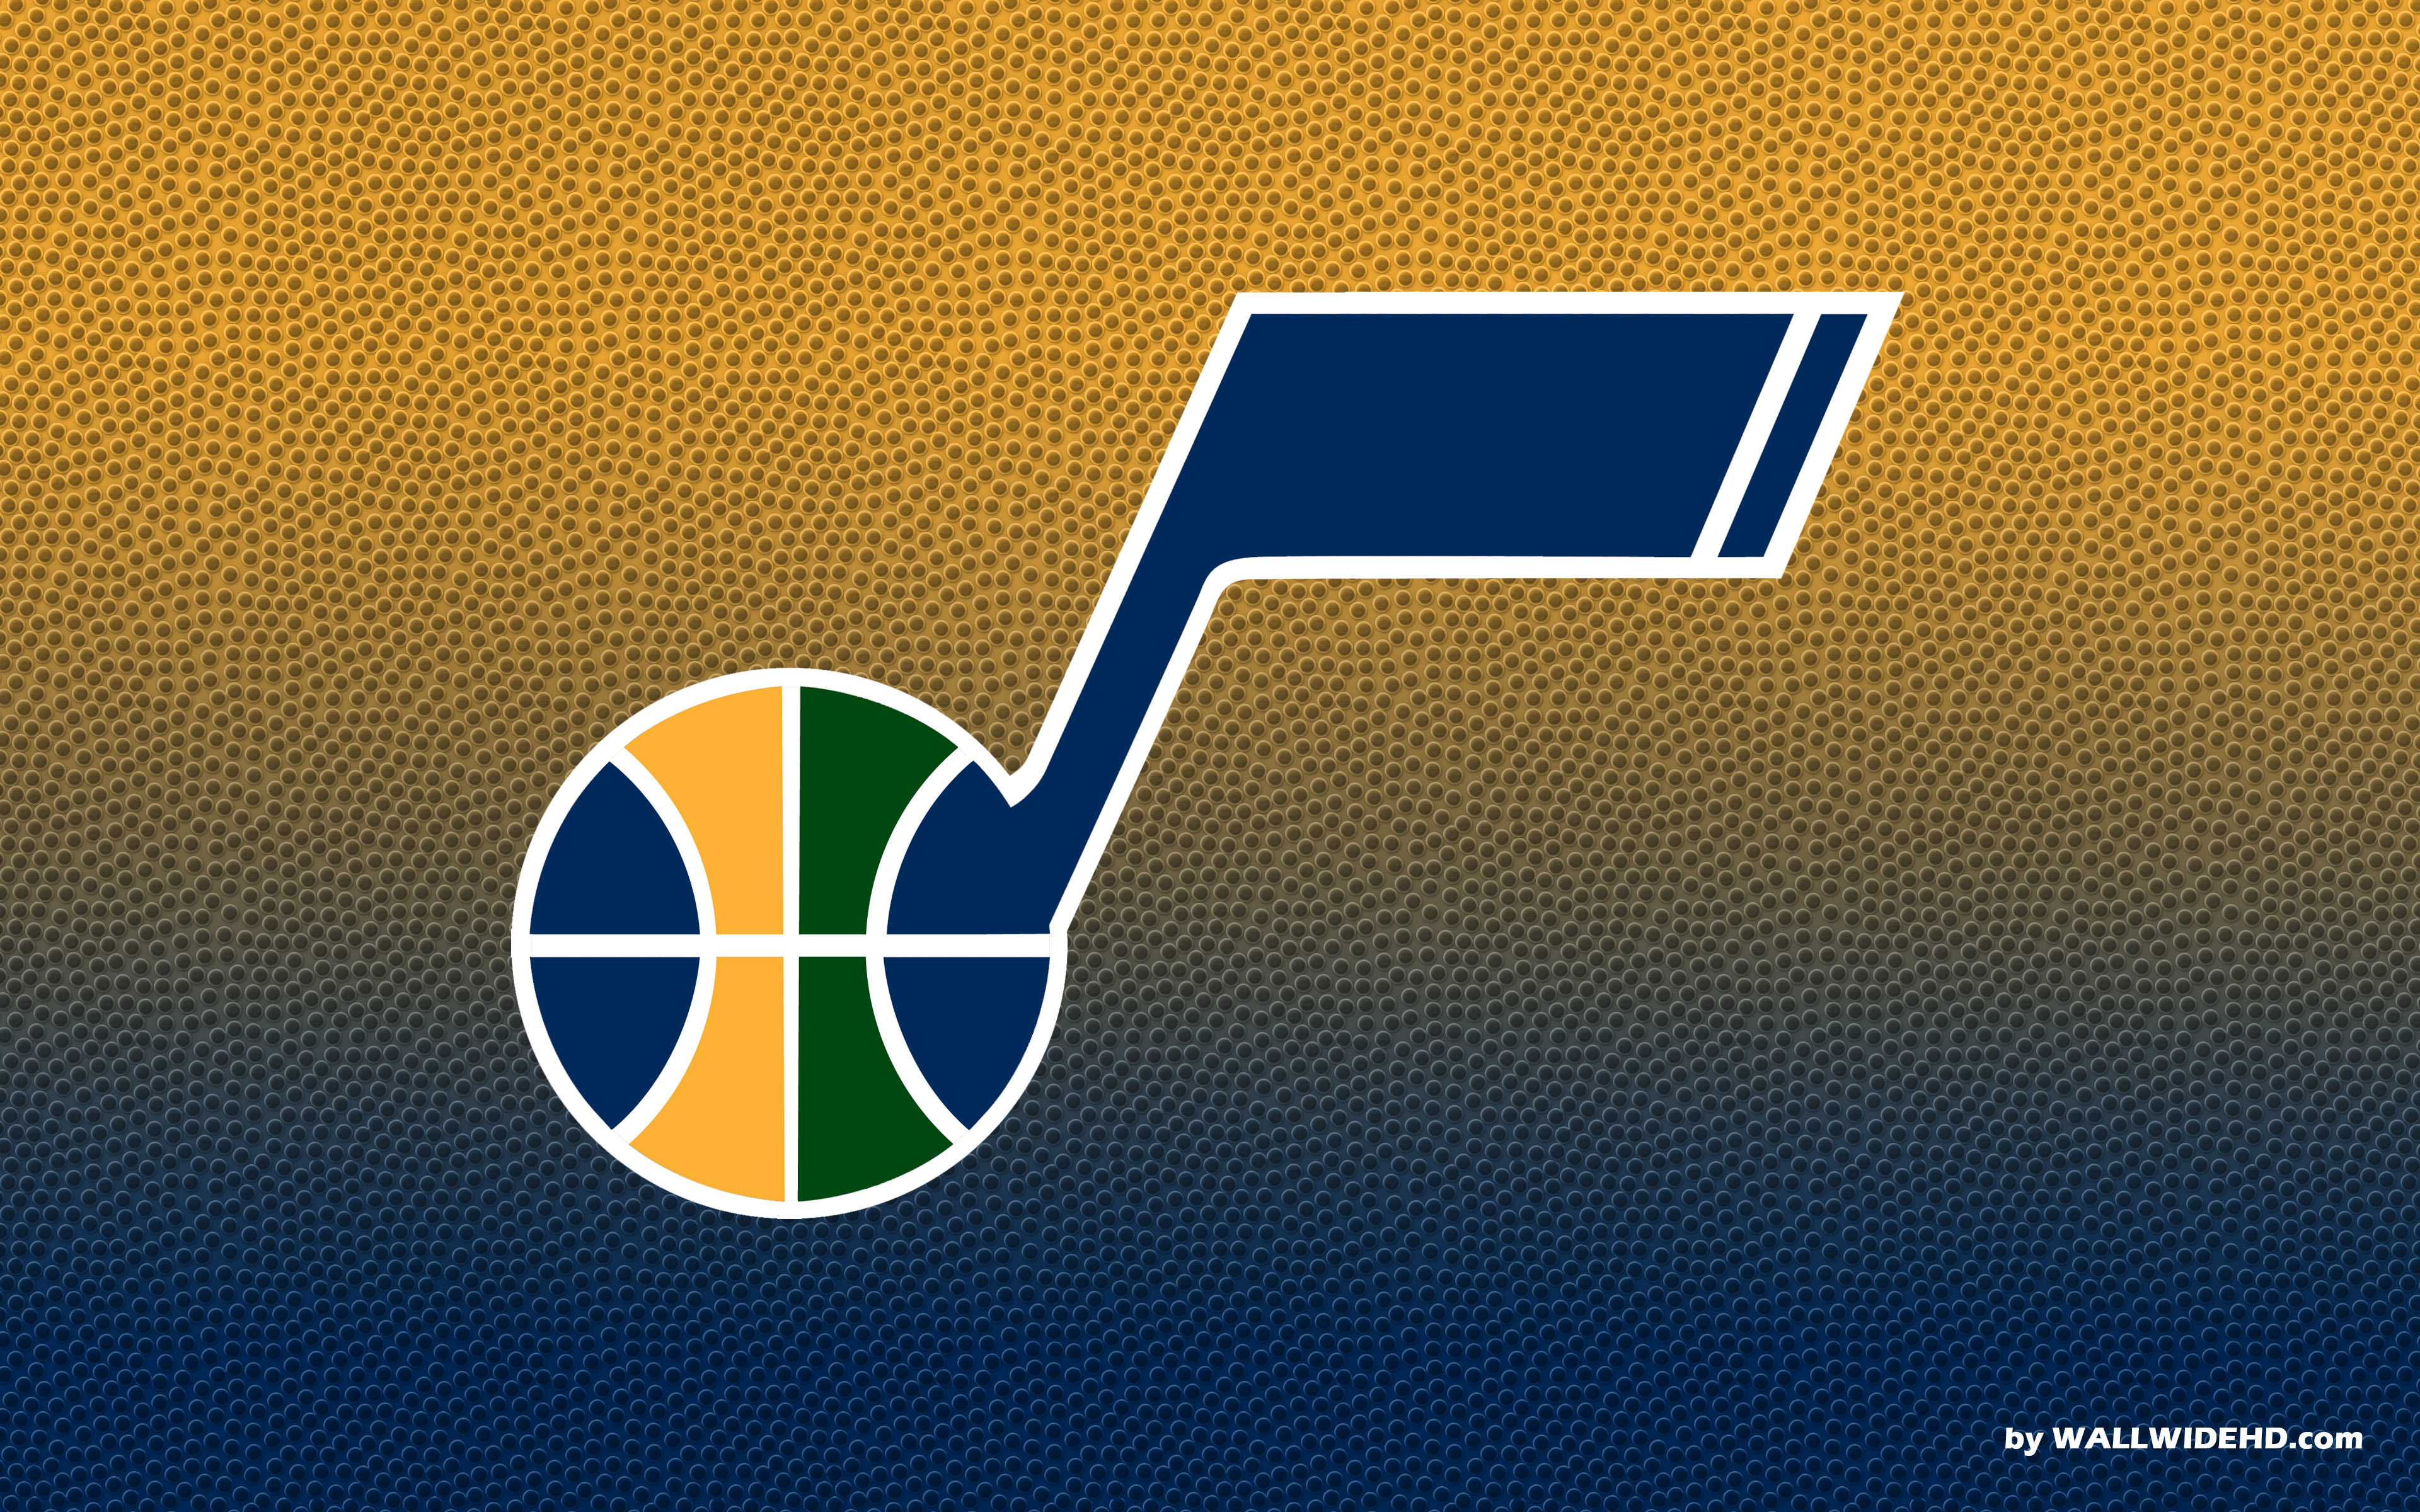 Utah Jazz Logo Full HD Pictures